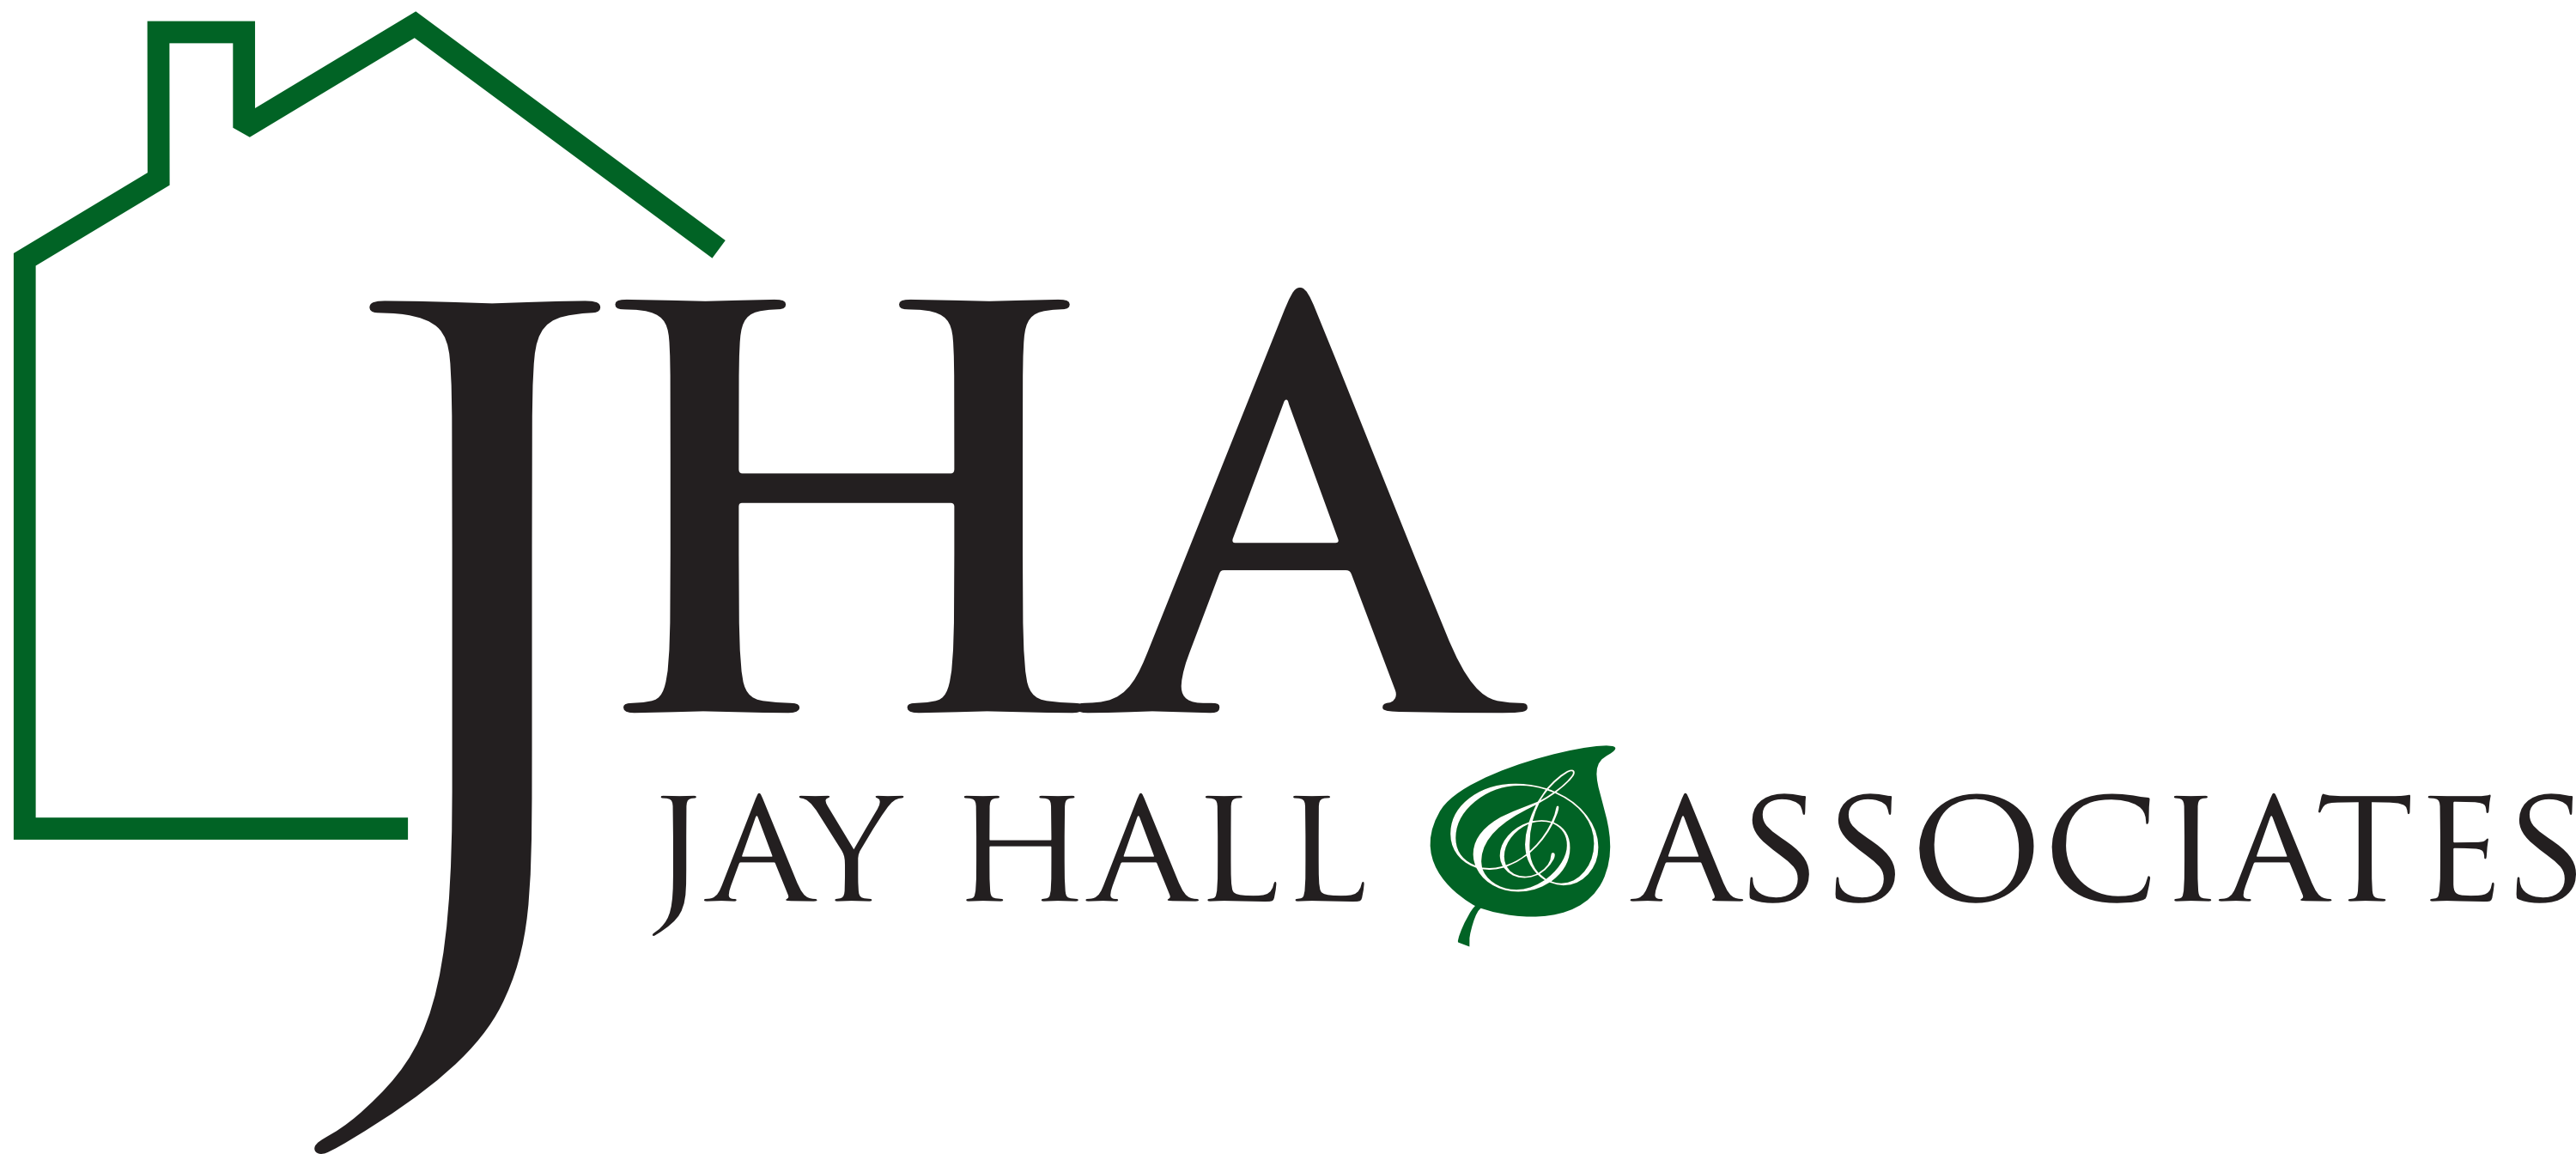 Jay Hall & Associates, Inc. company logo